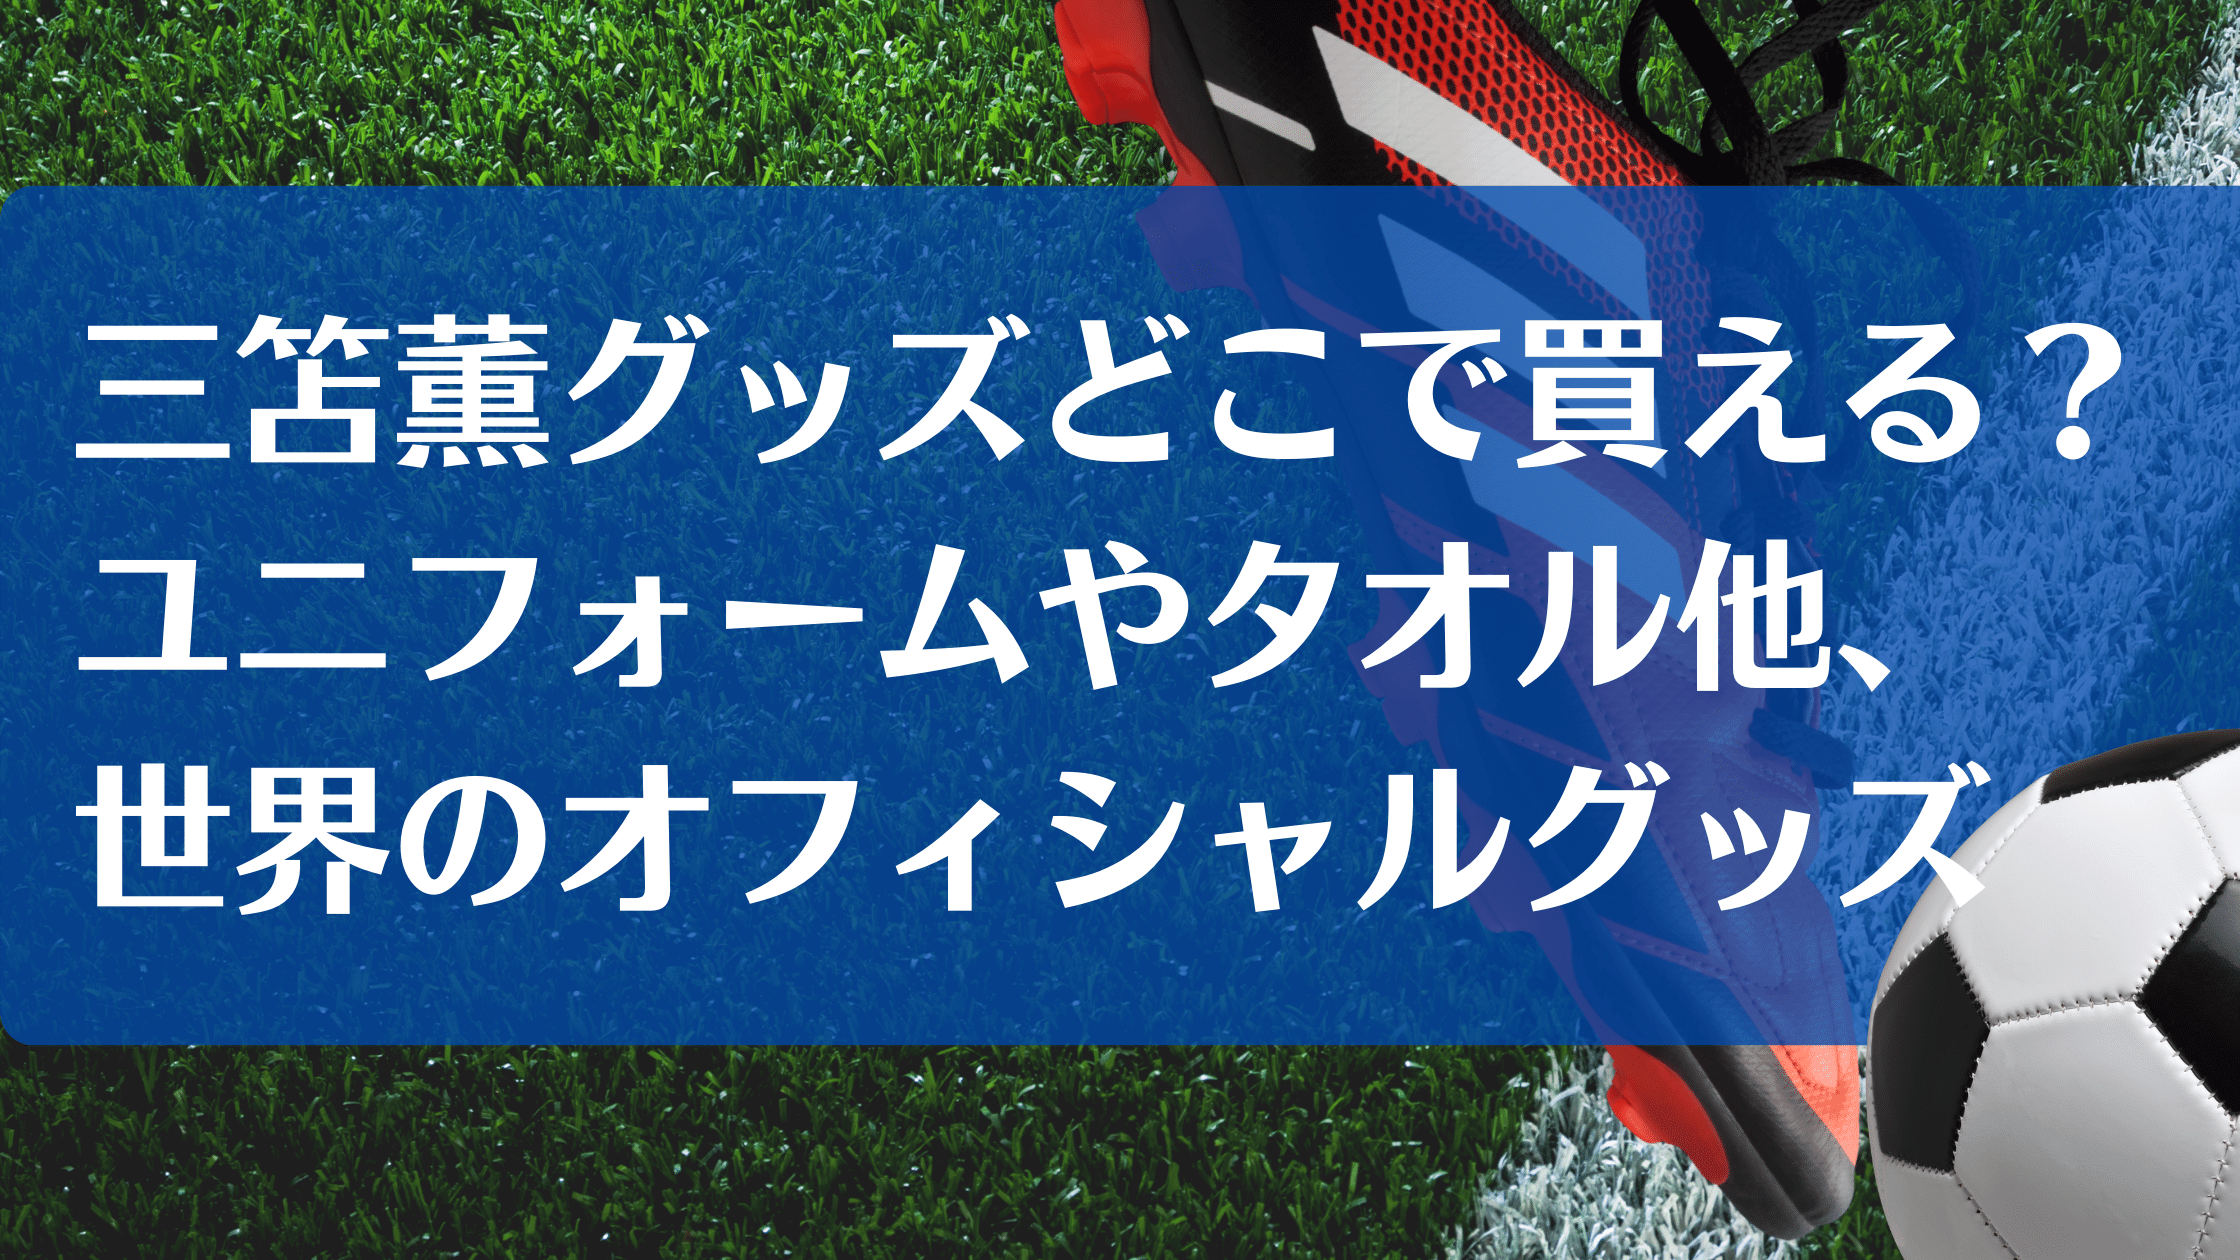 4年保証』 サッカー日本代表 三笘薫 アクリルスタンド fawe.org